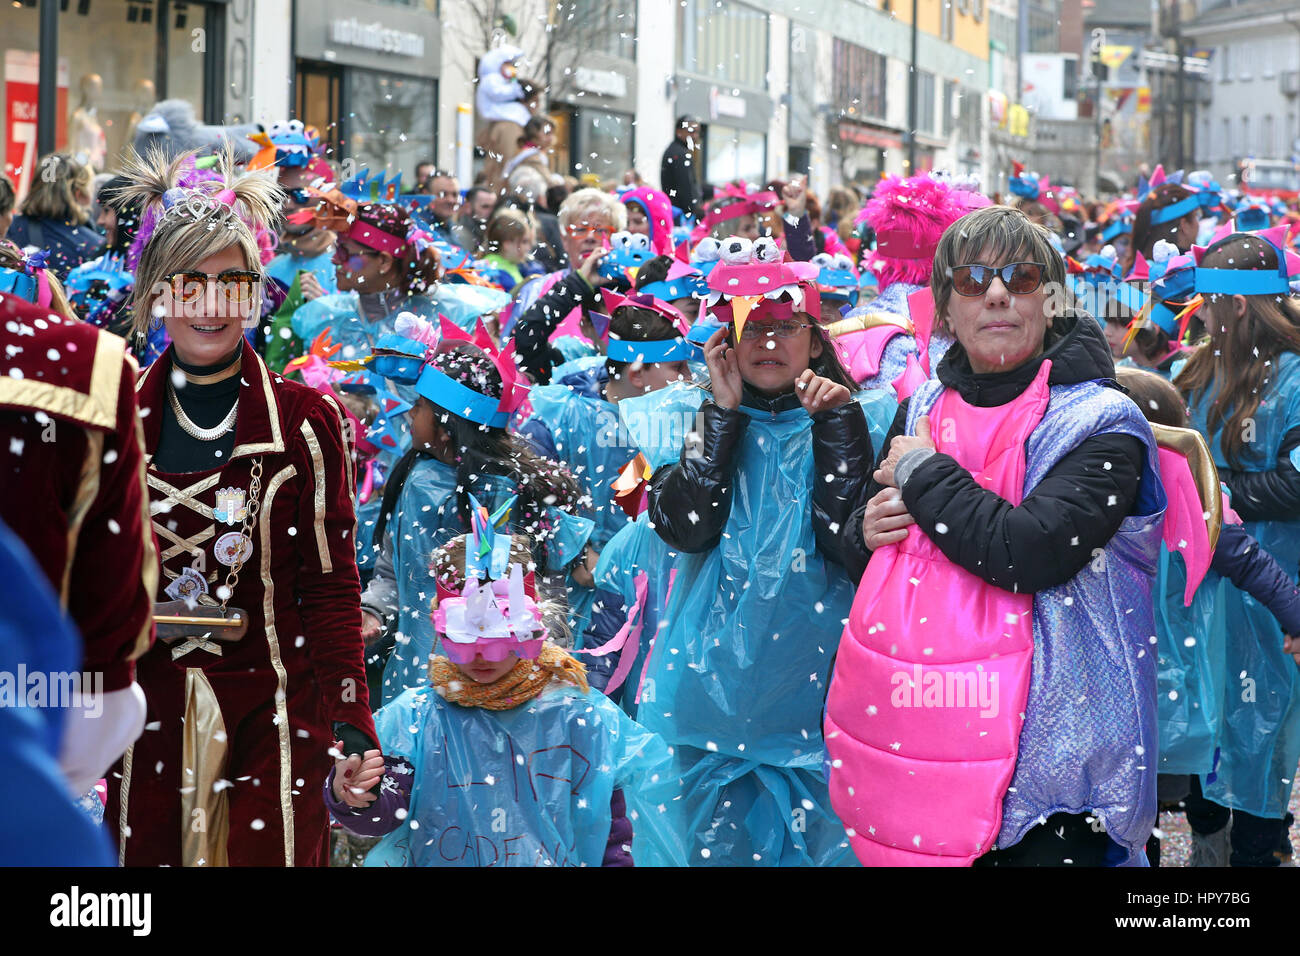 Bellinzona, Schweiz-Februar 24,2017: Große Menschenmenge, marching Bands,  Guggen Musik und bunten Masken auf der Rabadan Karneval 2017 Öffnung parade  Stockfotografie - Alamy